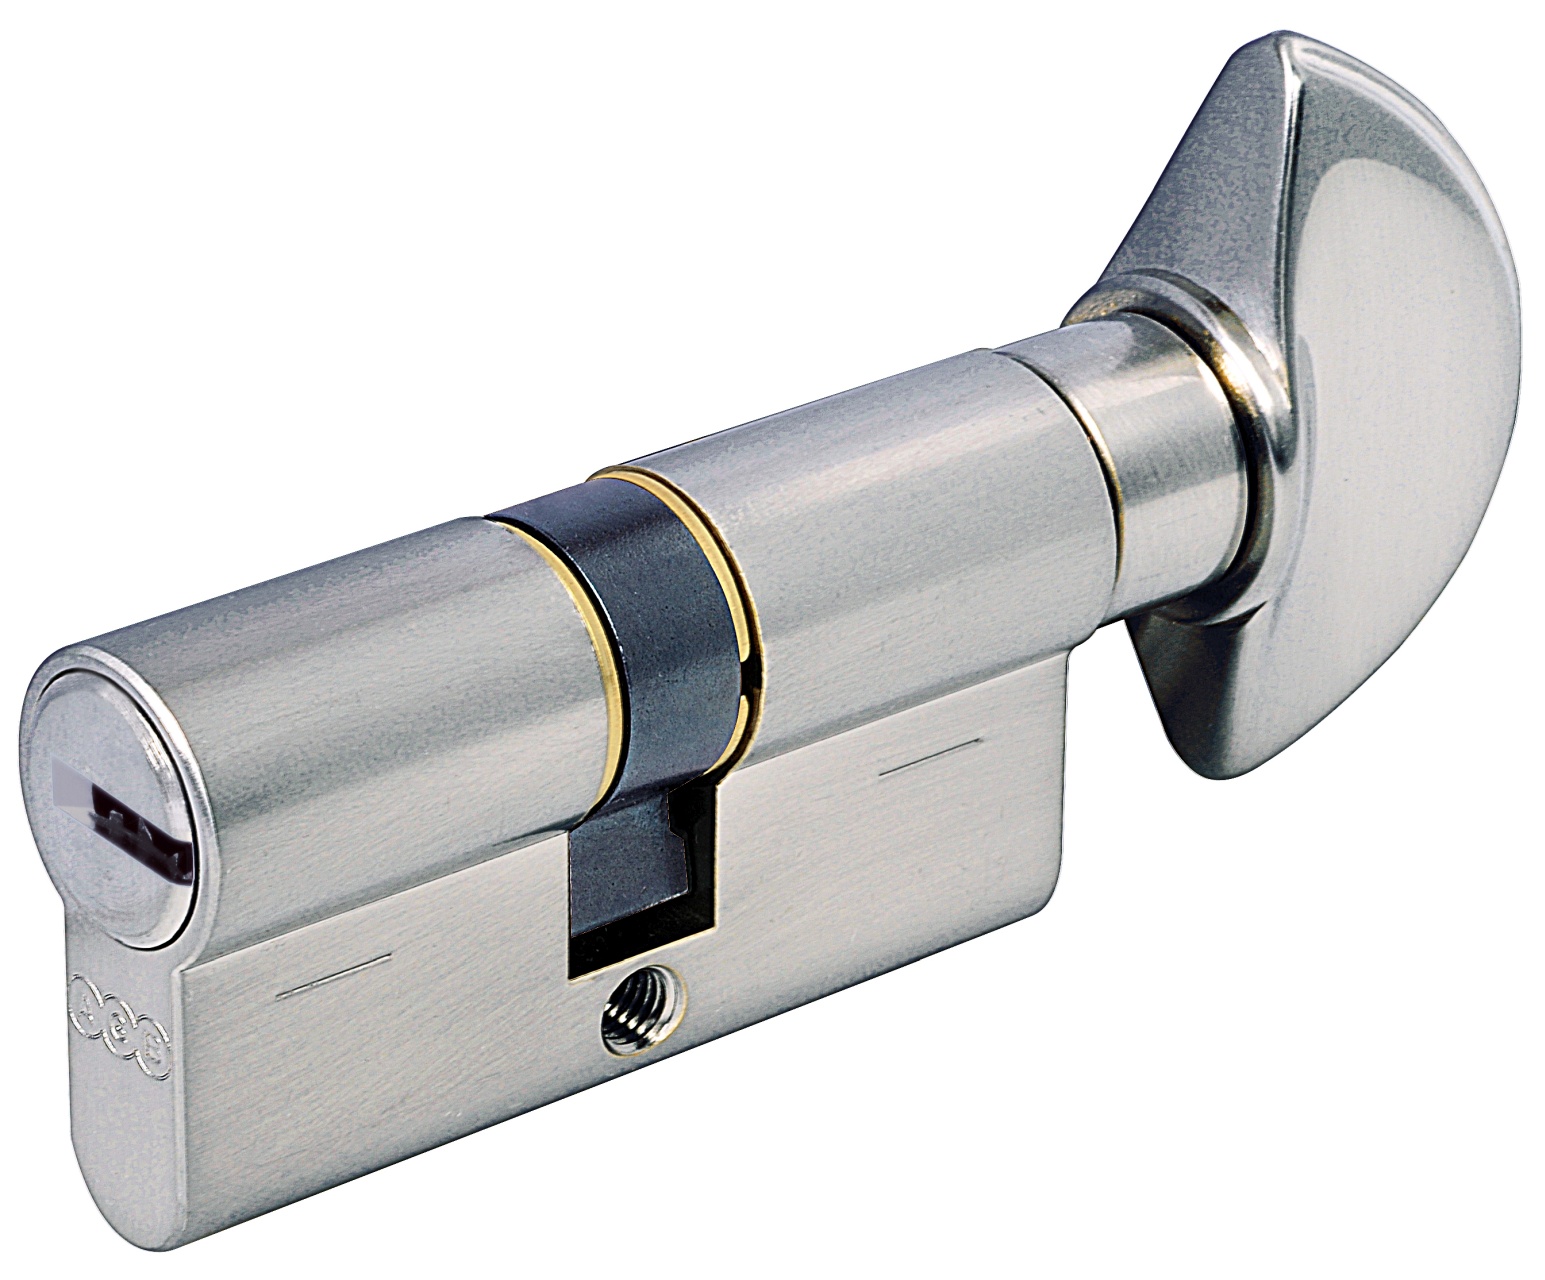 AGB -  Cilindro SCUDO 5000 PS frizionato anti bamping con chiave e pomolo - col. NICHELATO OPACO - lunghezza 90 - misura P-40-10-40